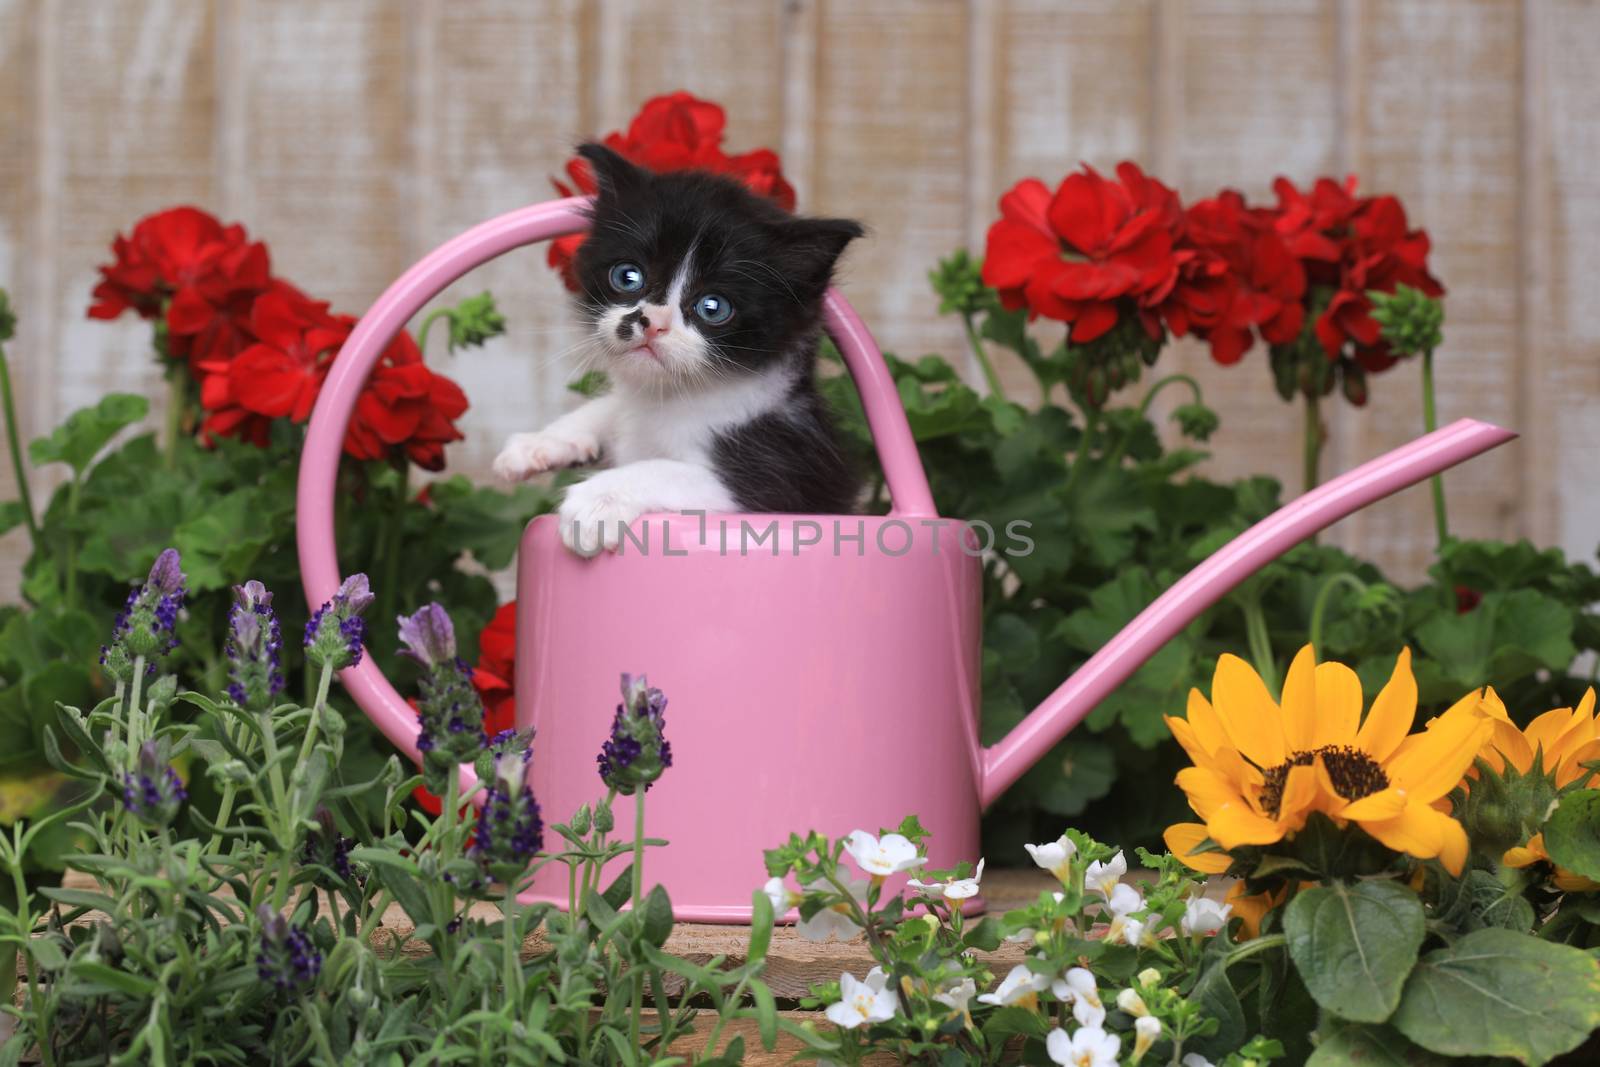 Cute 3 week old Baby Kitten in a Garden Setting by tobkatrina